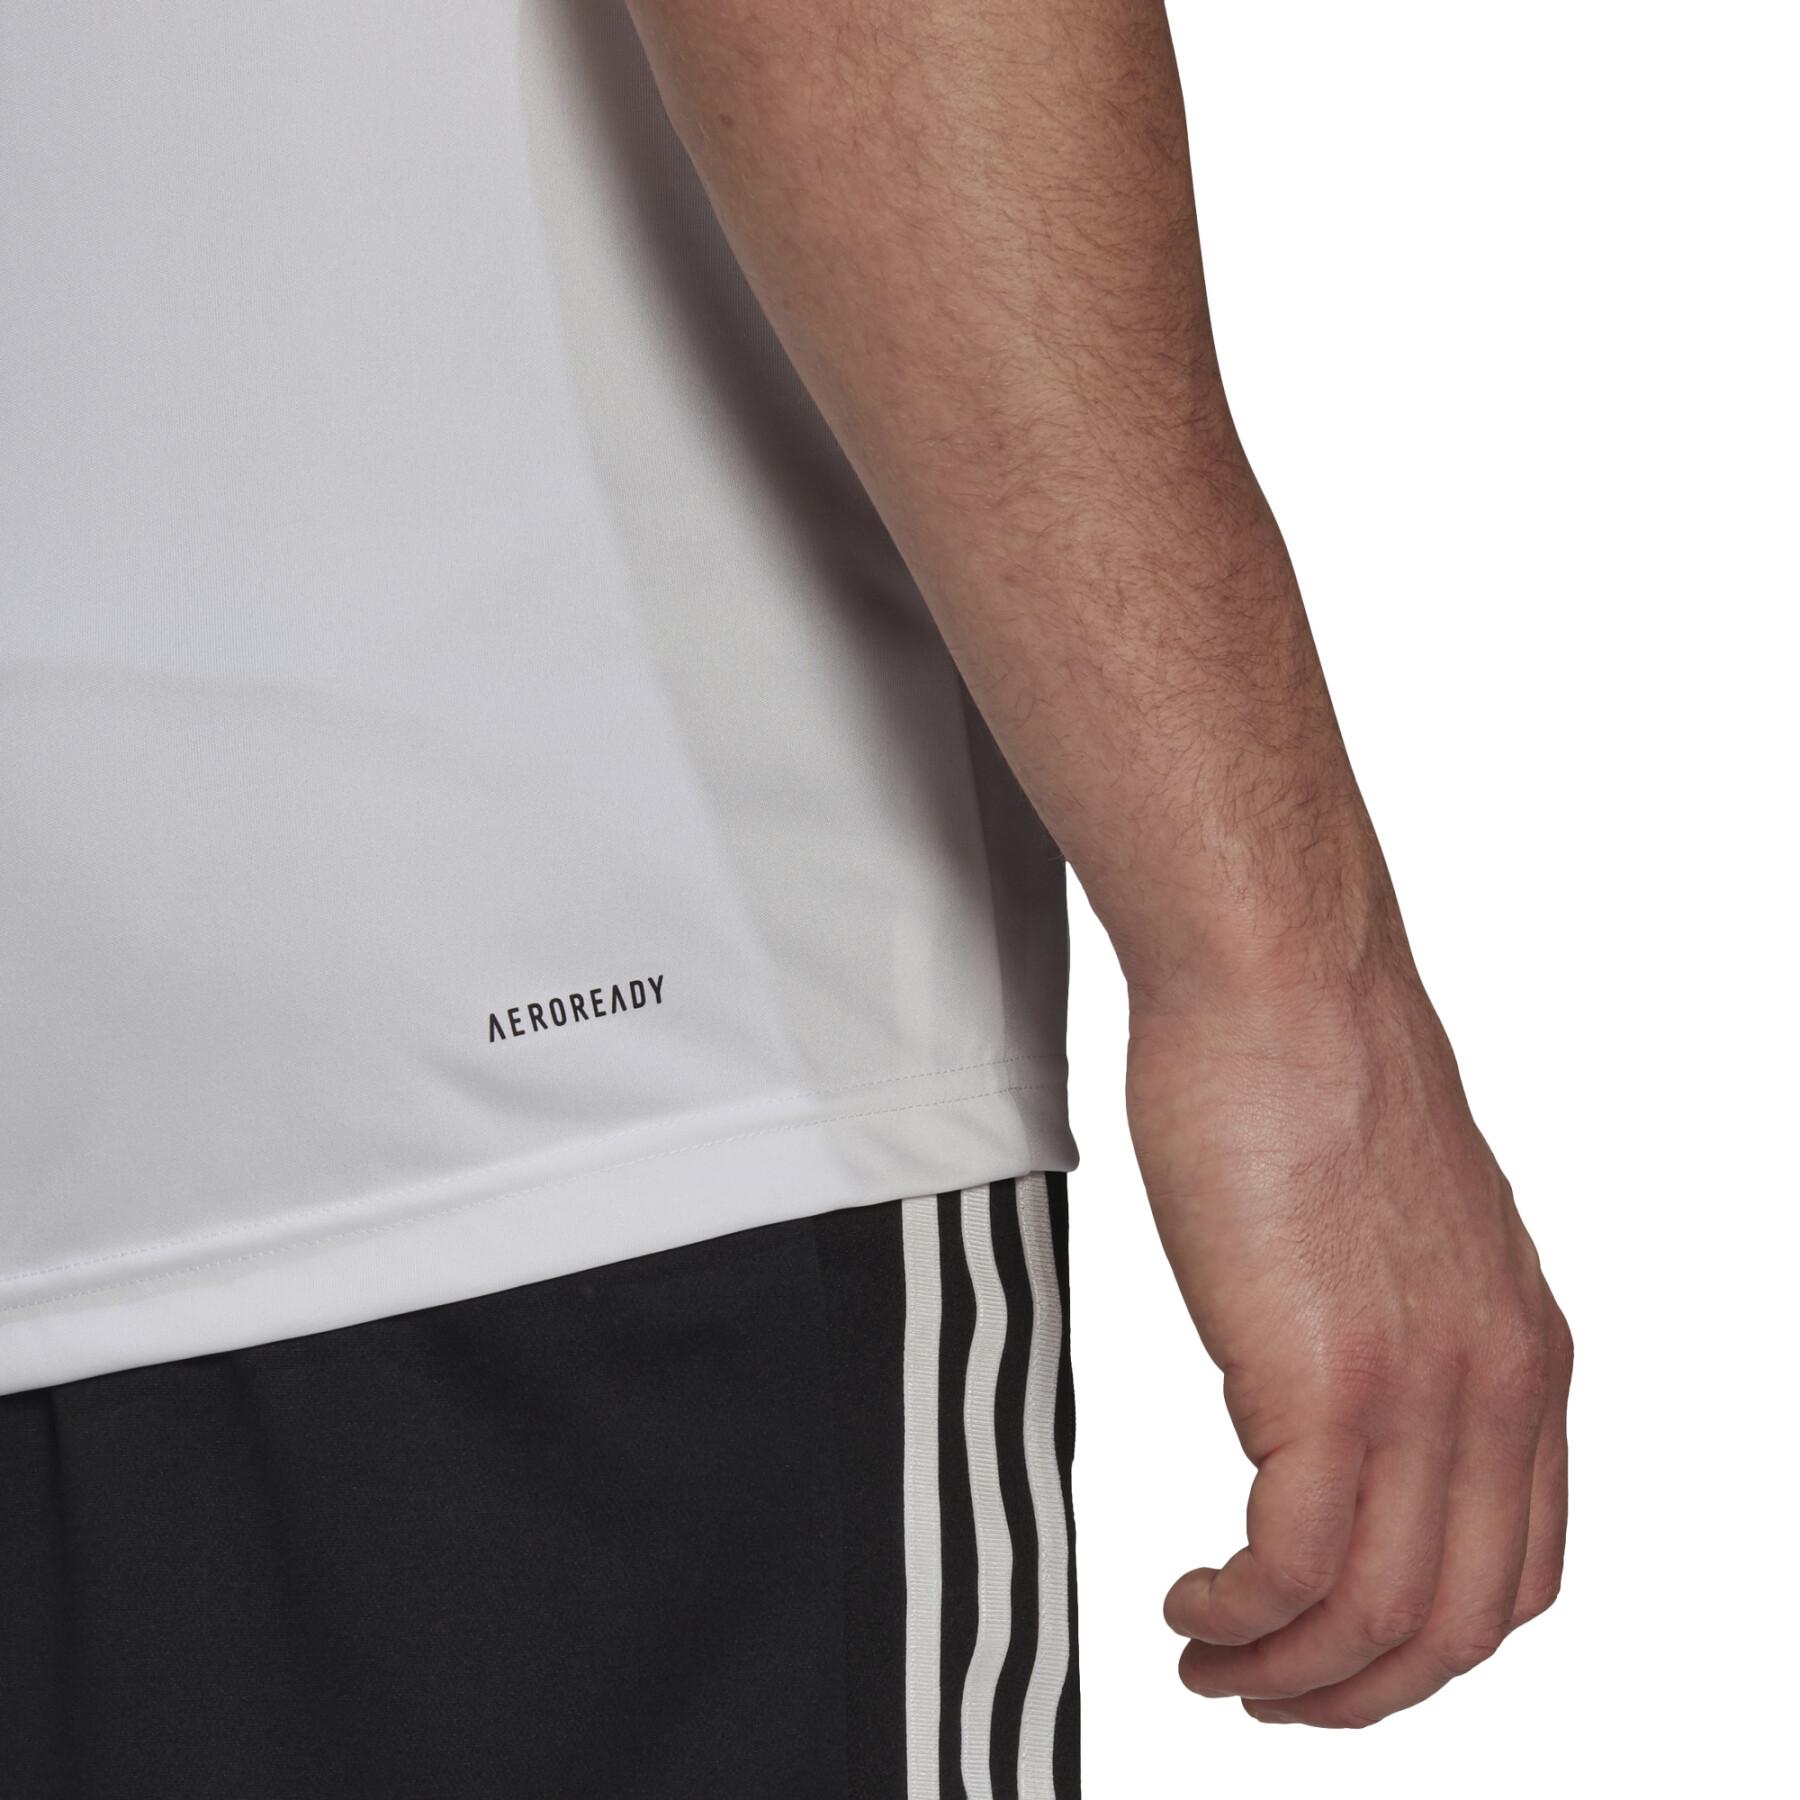 Camiseta adidas Primeblue Designed To Move Sport